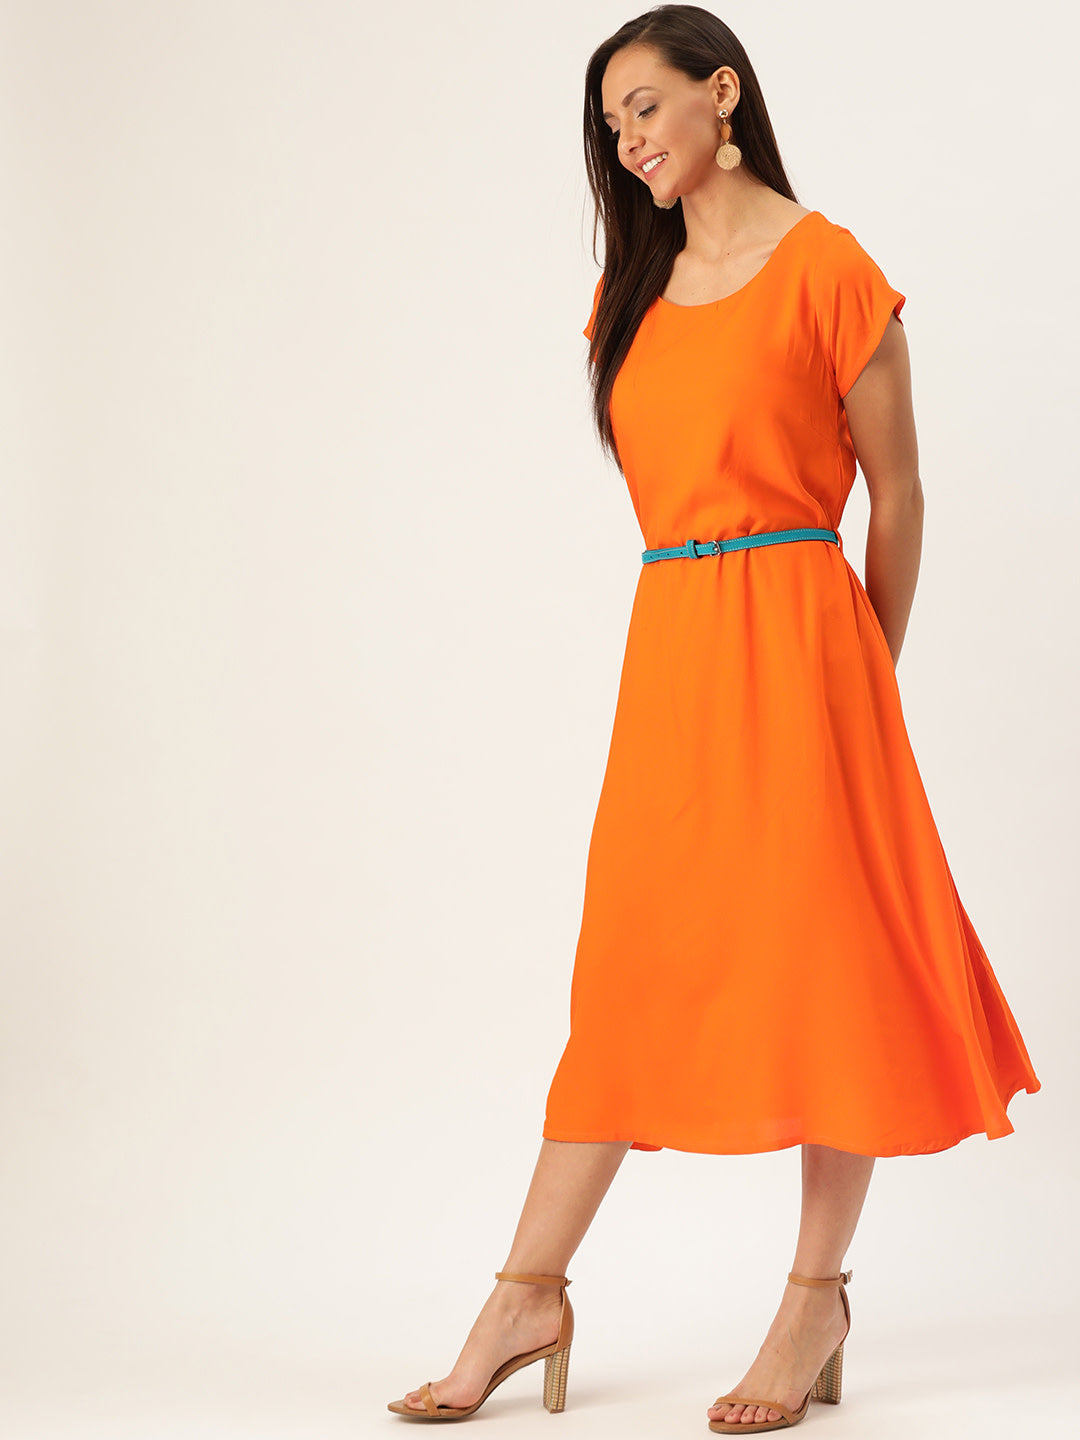 Orange Dress Aqua Belt